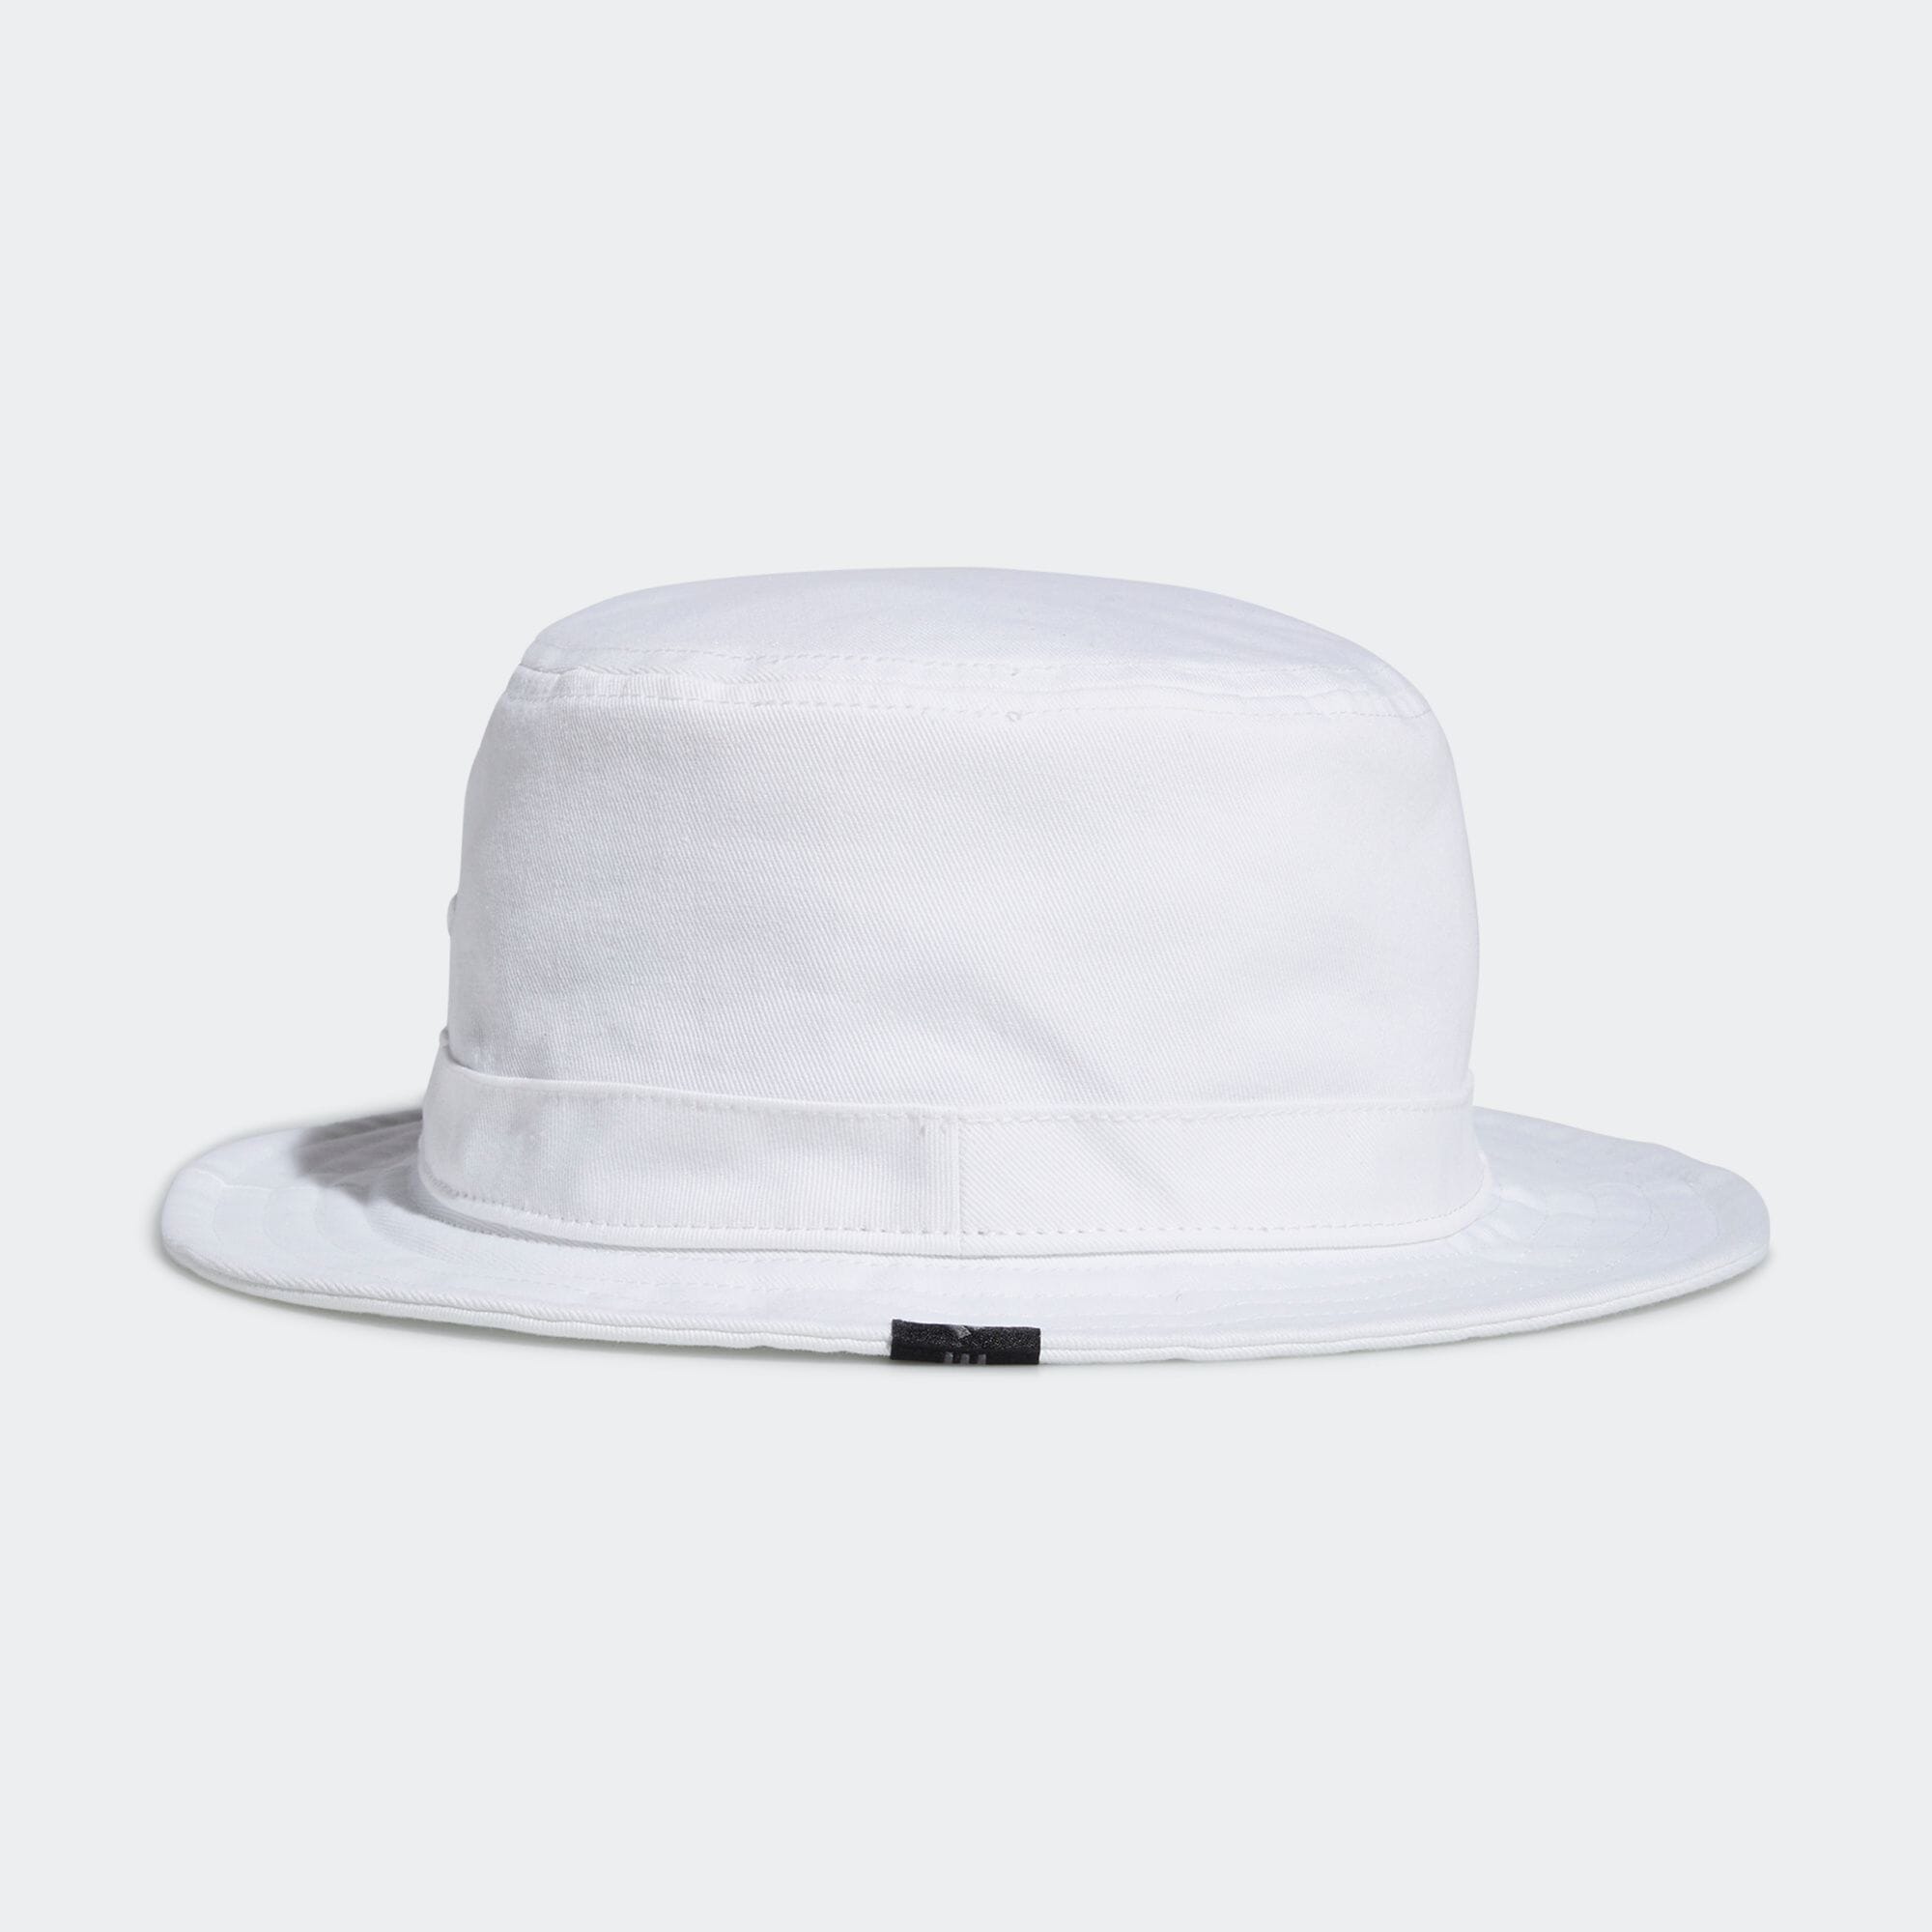 【アディダス公式通販】ADICROSS ハット / adidas Golf Bucket Hat 